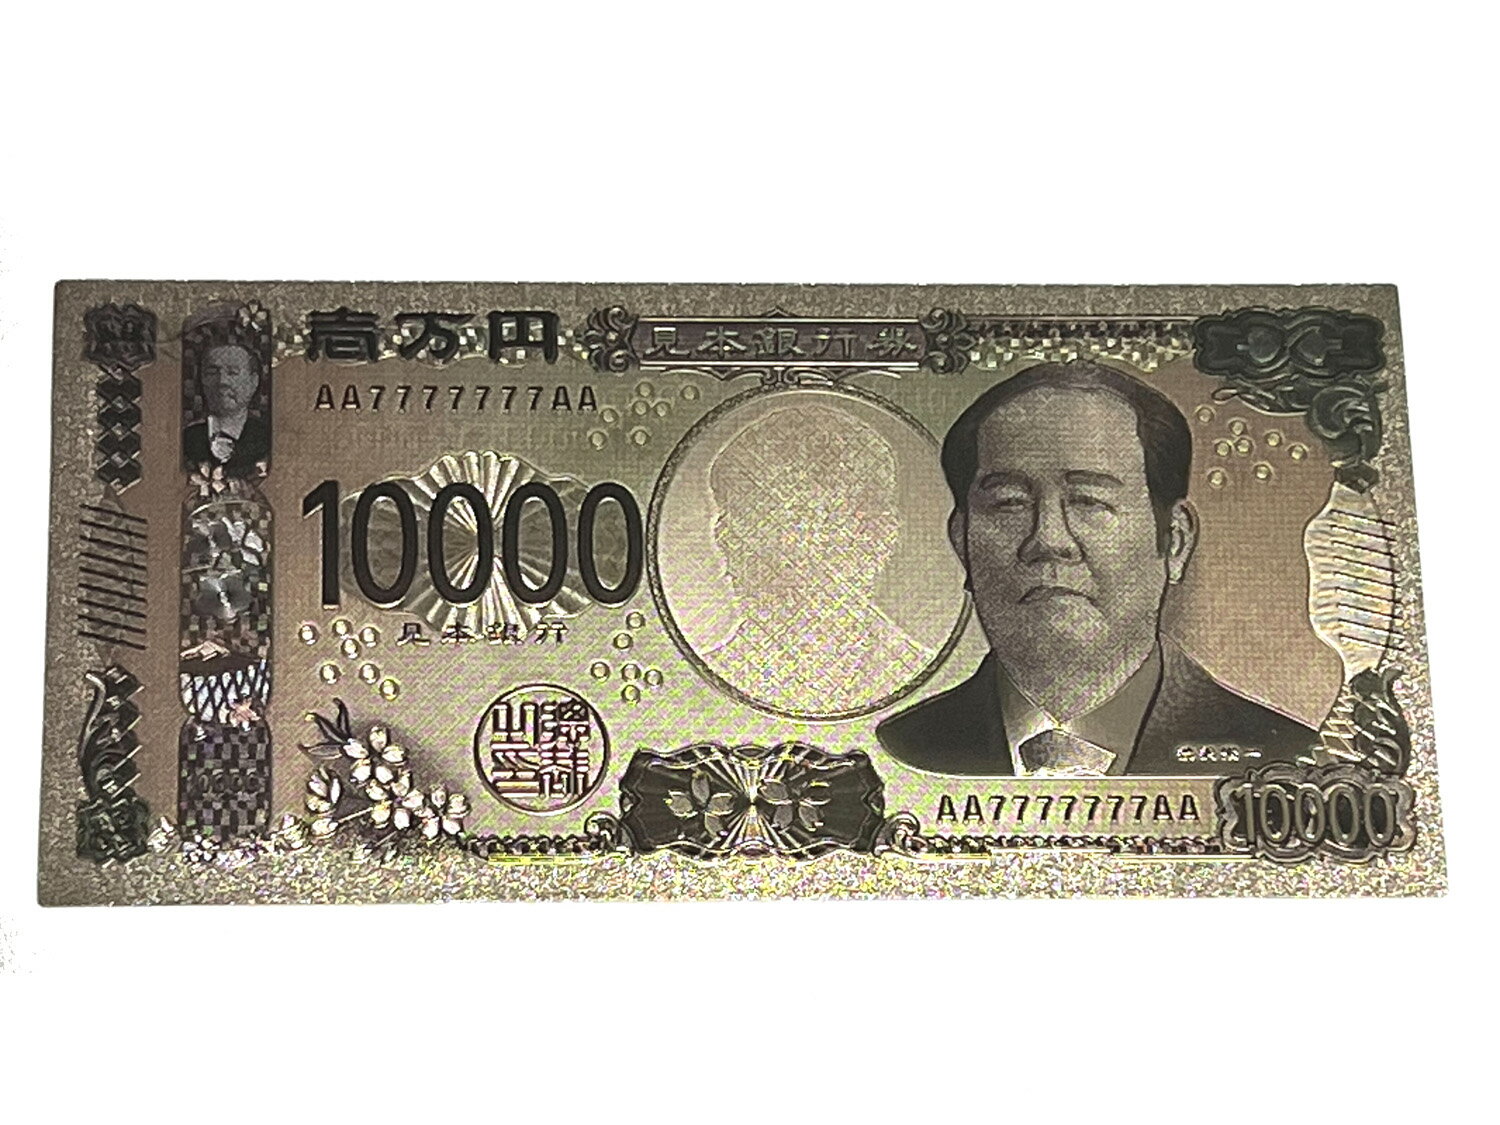 令和の新一万円札 日本資本主義の父と呼ばれ、注目が高まる 『渋沢栄一氏』が描かれた”令和”の新一万円札 銀色に少し金みのかかったカラー 縁起のいいお札です。 縁起物として飾っていても良いですし プレゼントにも使えます。 本物のお札と同じ大きさですので 長財布にも入ります。 ※シリアル番号は変割る可能性があります。 ※折り曲げることはできませんのでご注意下さい。 ※実際のお金としては使用できません ※簡易包装にてお送りさせていただきます。 ★★★★★★★★★★★★★★★★ 【サイズ】 よこ約16cm たて約7.5cm 【規格材質】 プラスチックに表面アルミ・エッジング加工 ★★★★★★★★★★★★★★★★